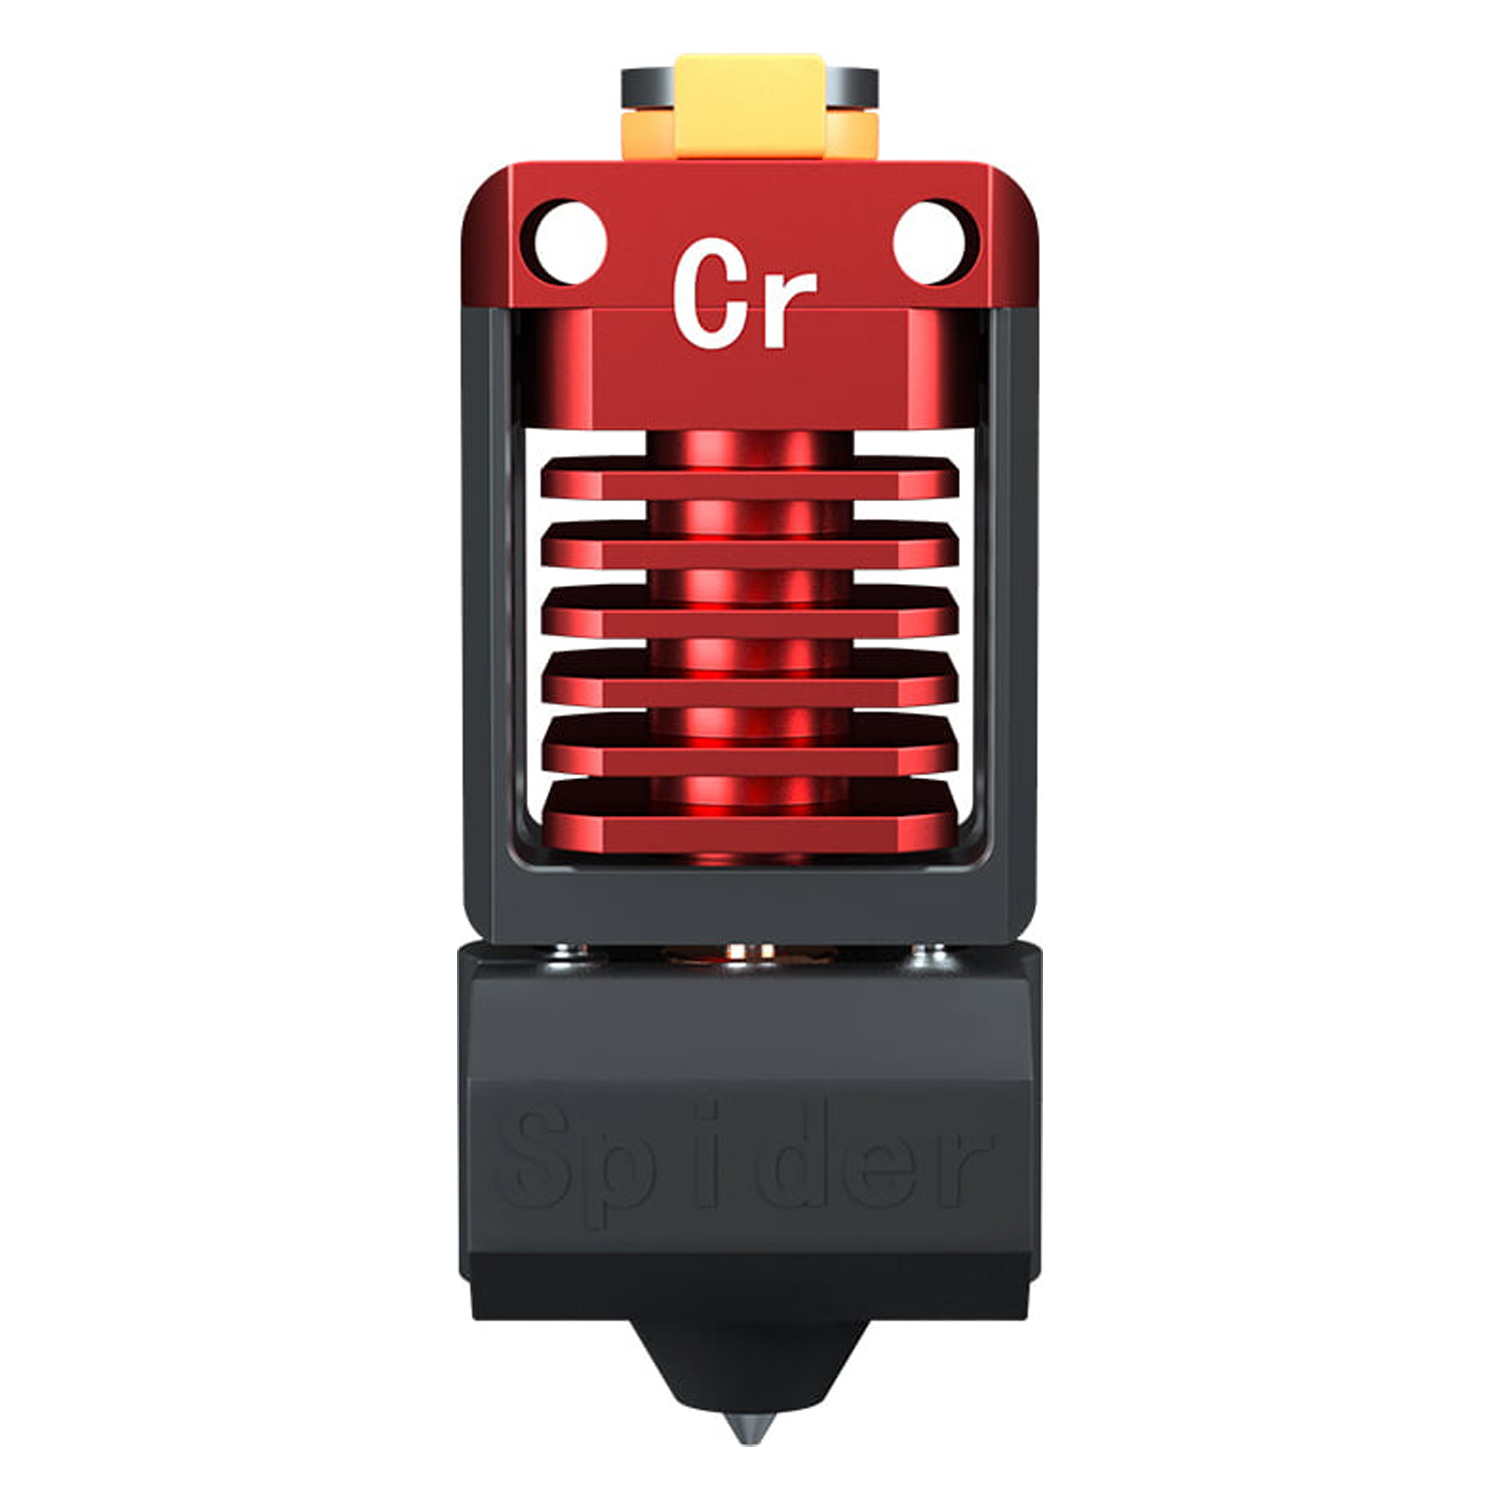 Spider Hotend Creality para Impressora 3D Ender CR